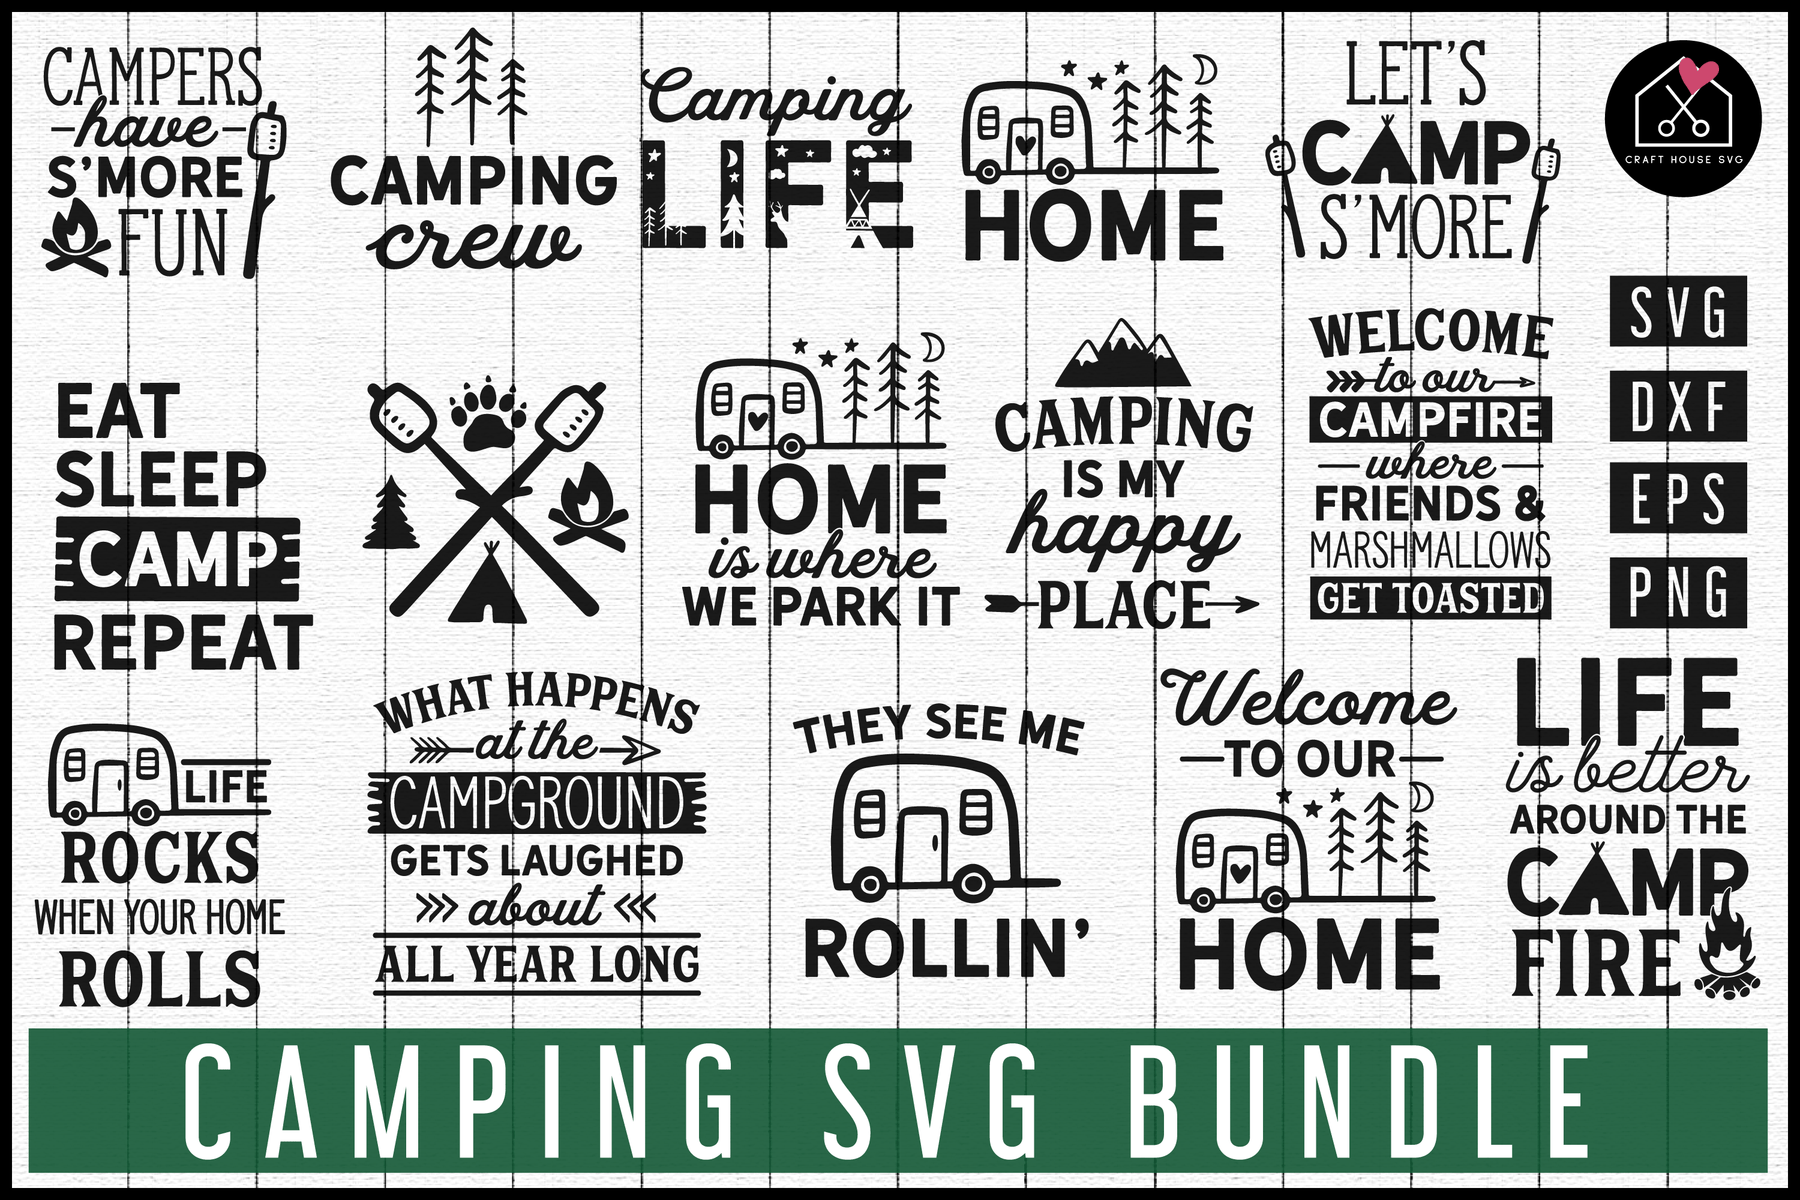 Download Camping Svg Bundle Mb67 Craft House Svg